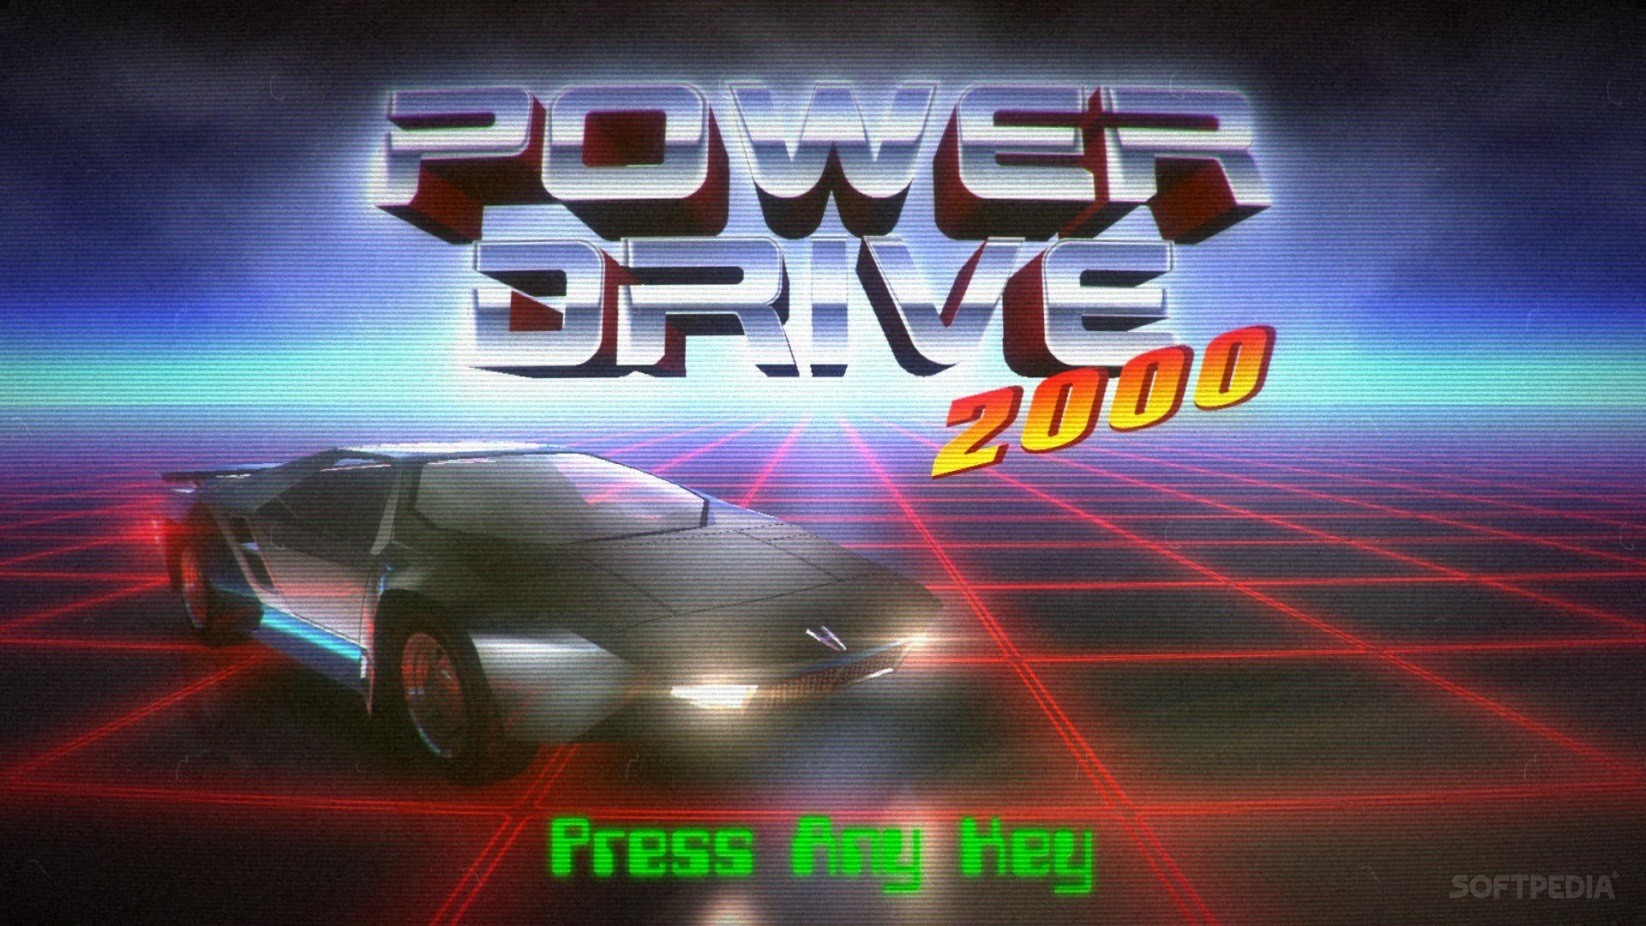 Conheça Power Drive 2000, um jogo de corrida com cara de anos 80